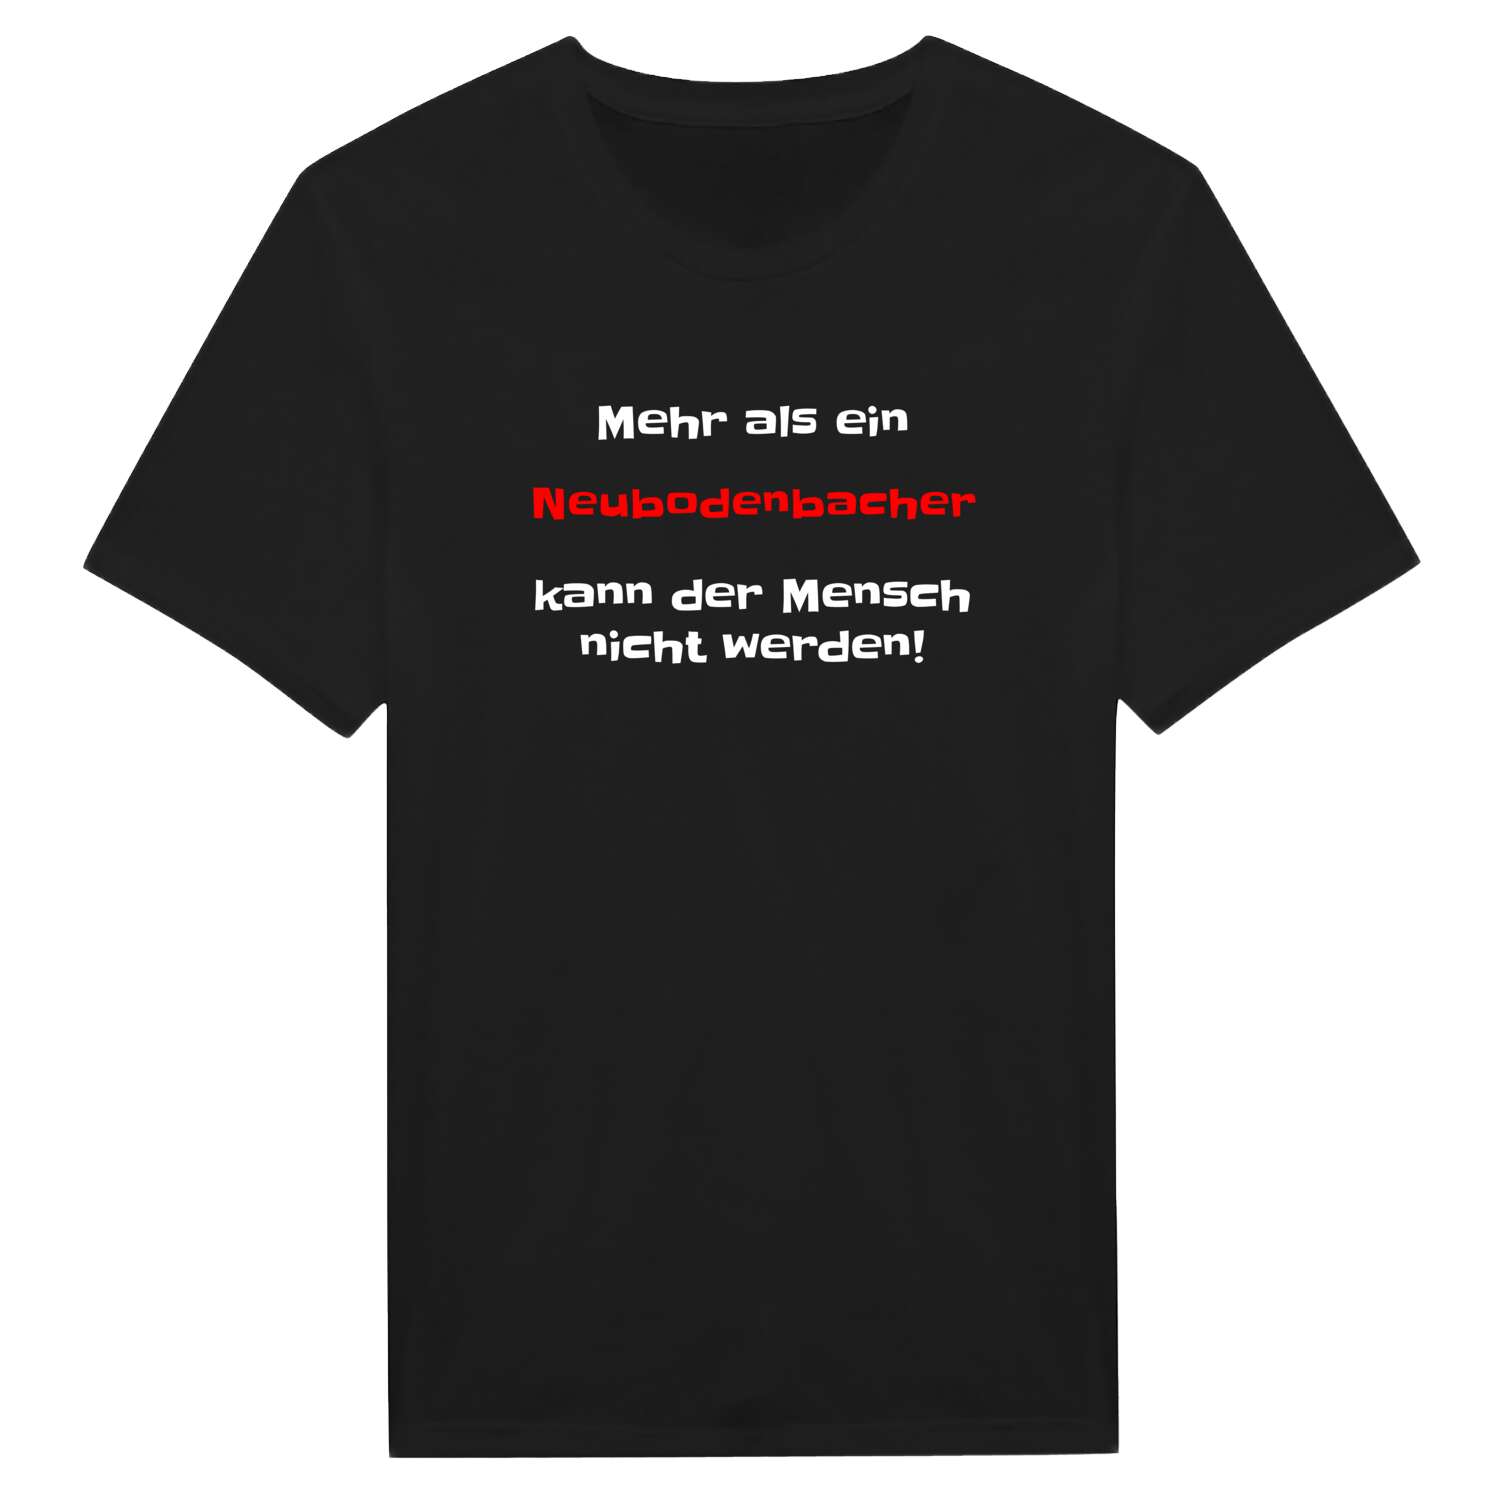 Neubodenbach T-Shirt »Mehr als ein«